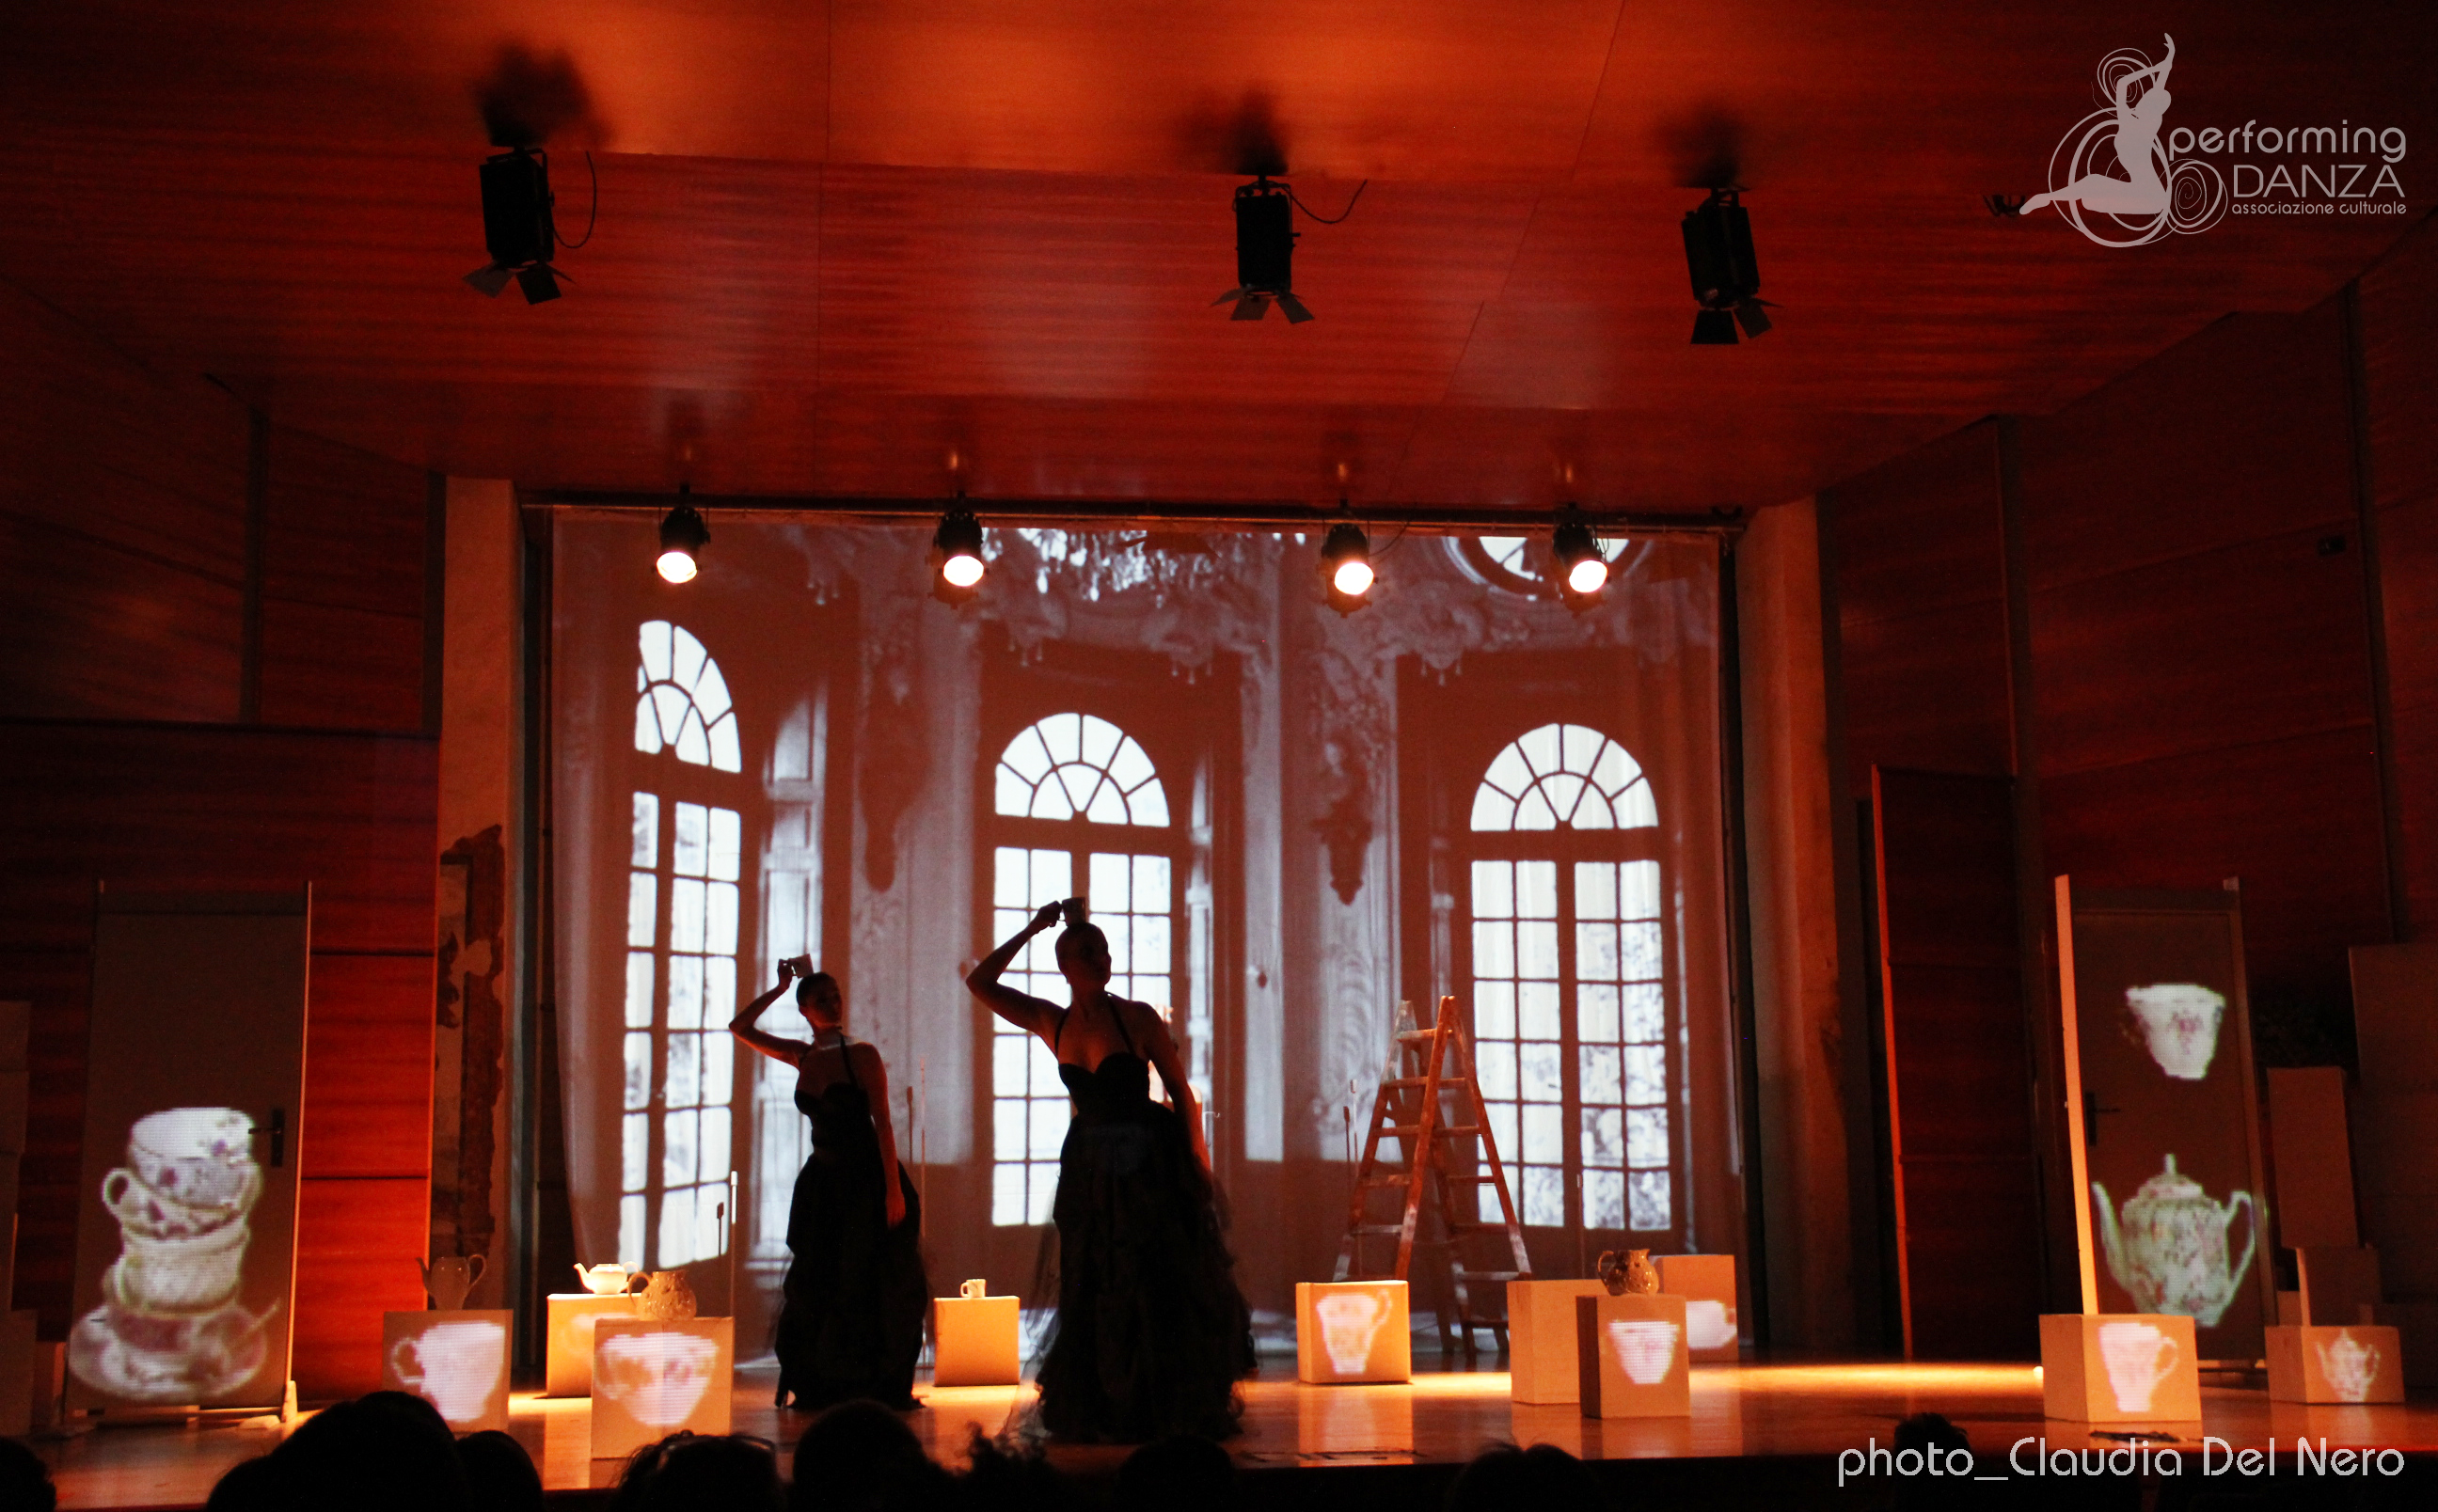 Performing Danza – Scatti Surreali